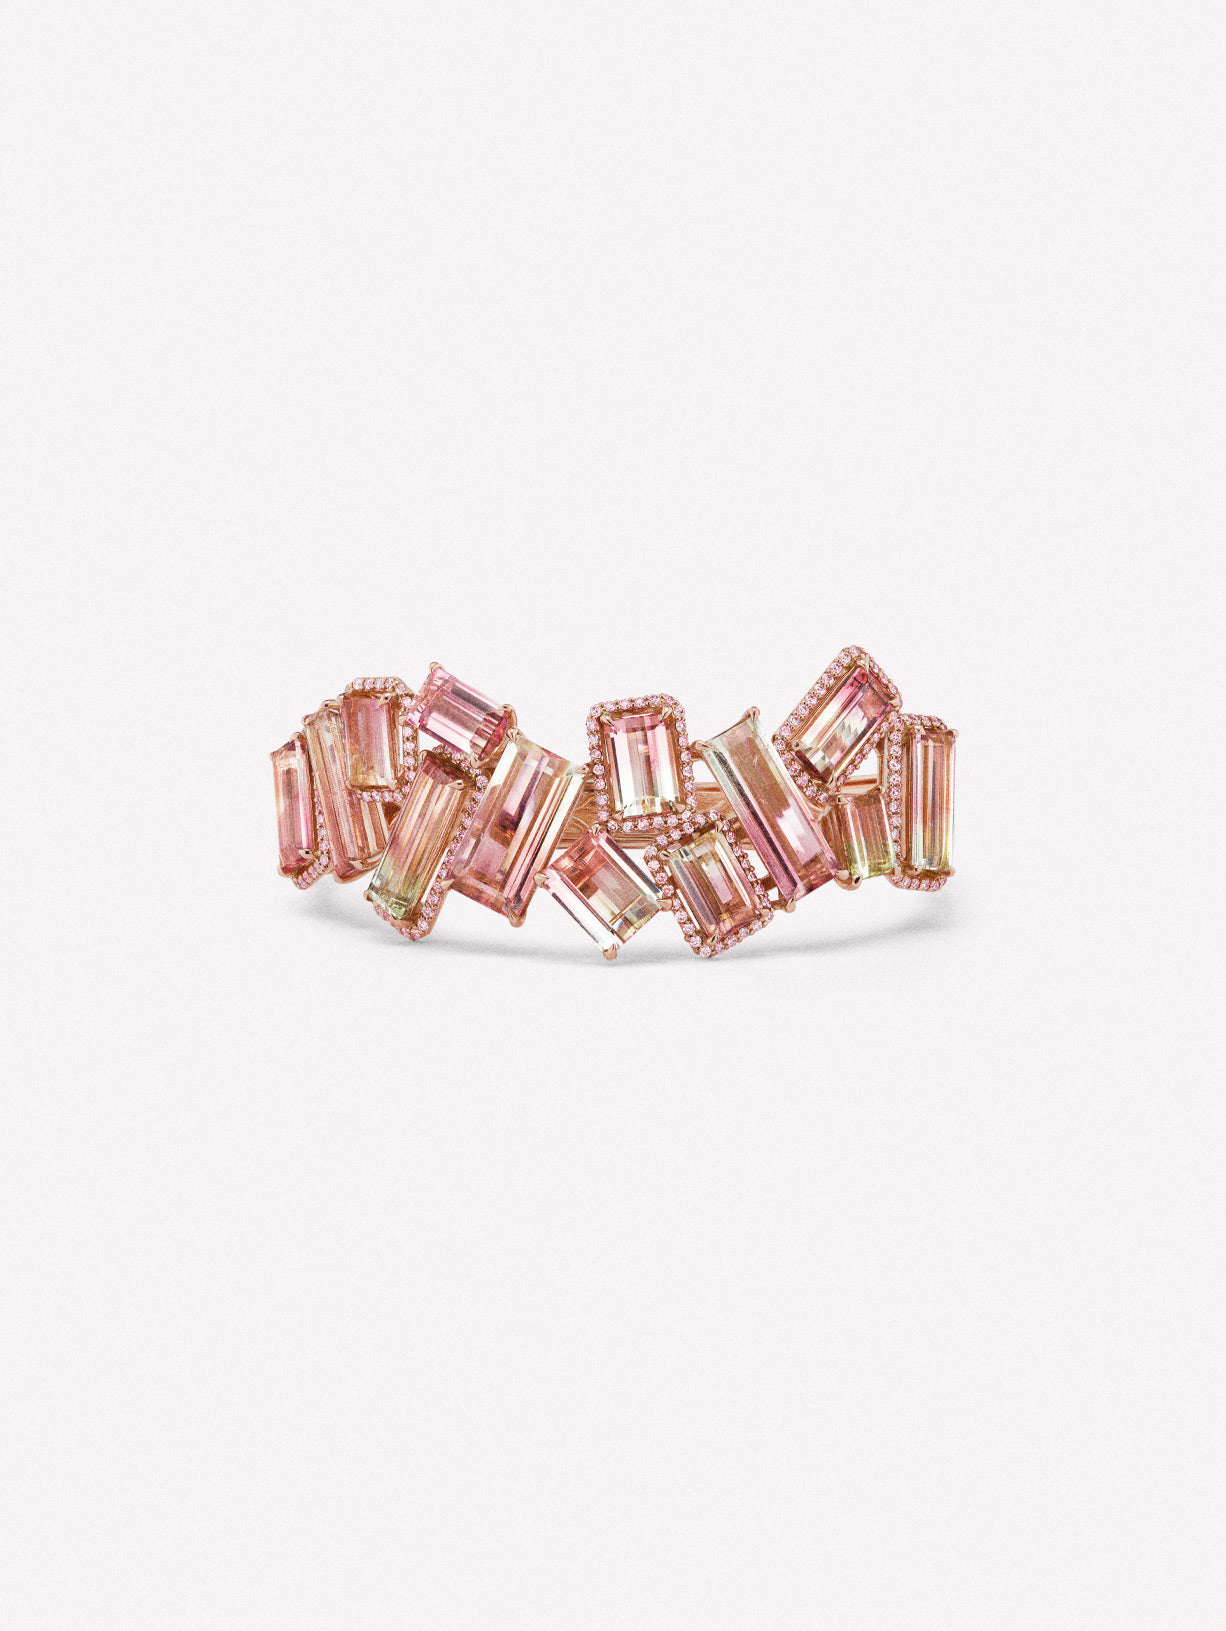 Argyle Pink™ Diamond and Bi Color Tourmaline Bracelet - Pink Diamonds, J FINE - J Fine, bracelet - Pink Diamond Jewelry, copy-of-argyle-diamond-chakri-bracelet-by-j-fine - Argyle Pink Diamo